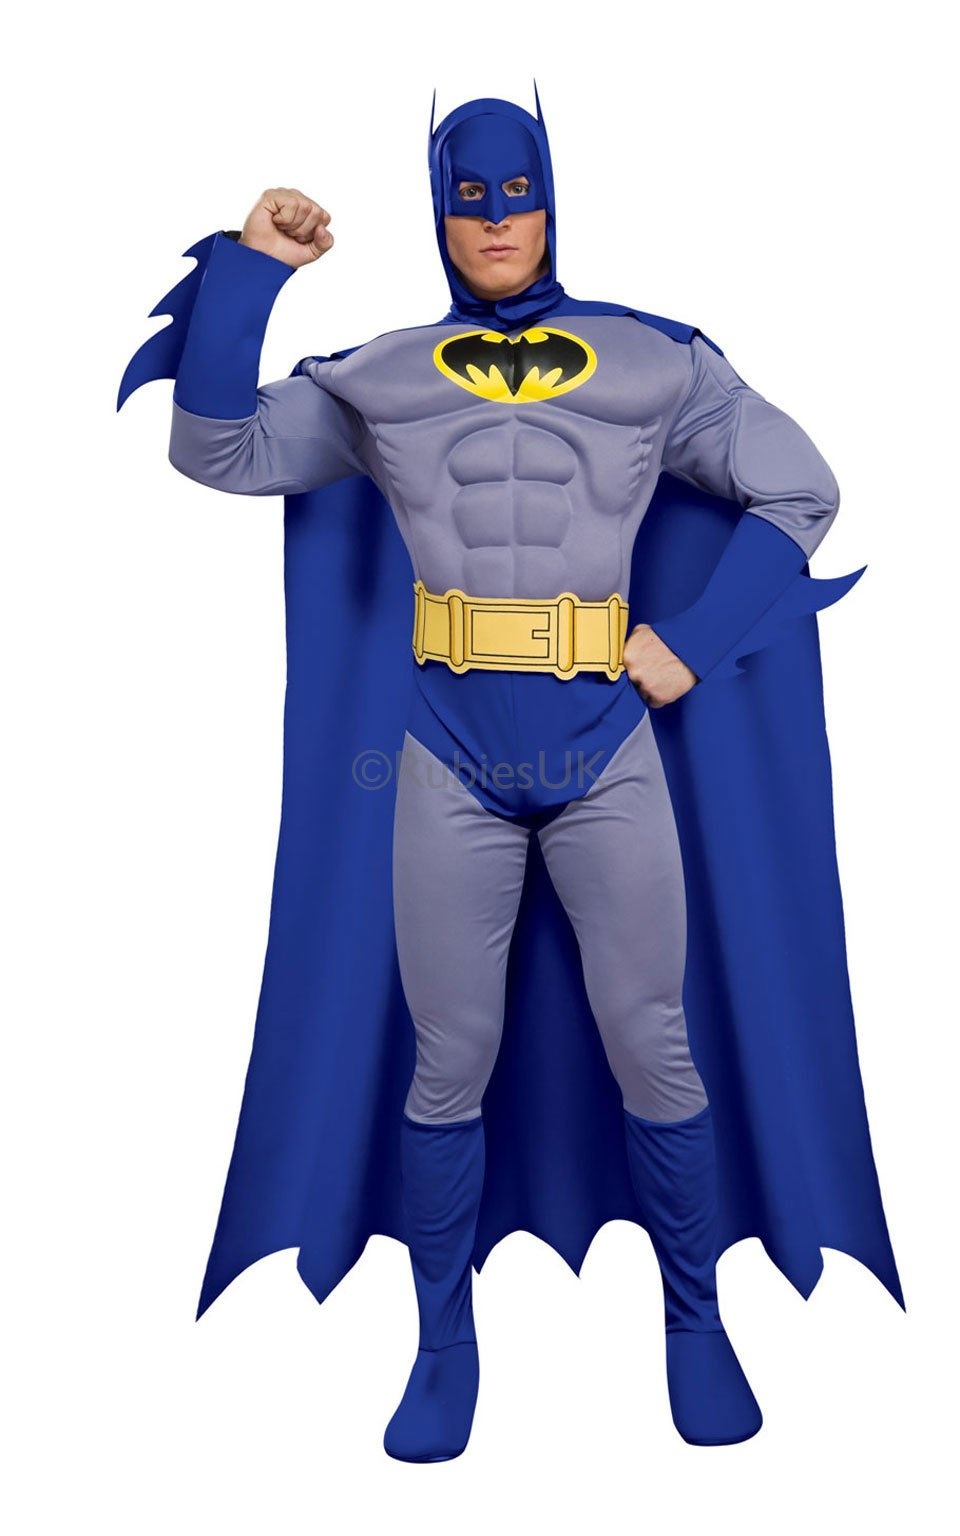 Comprar online el Disfraz de Batman? Deluxe para adulto